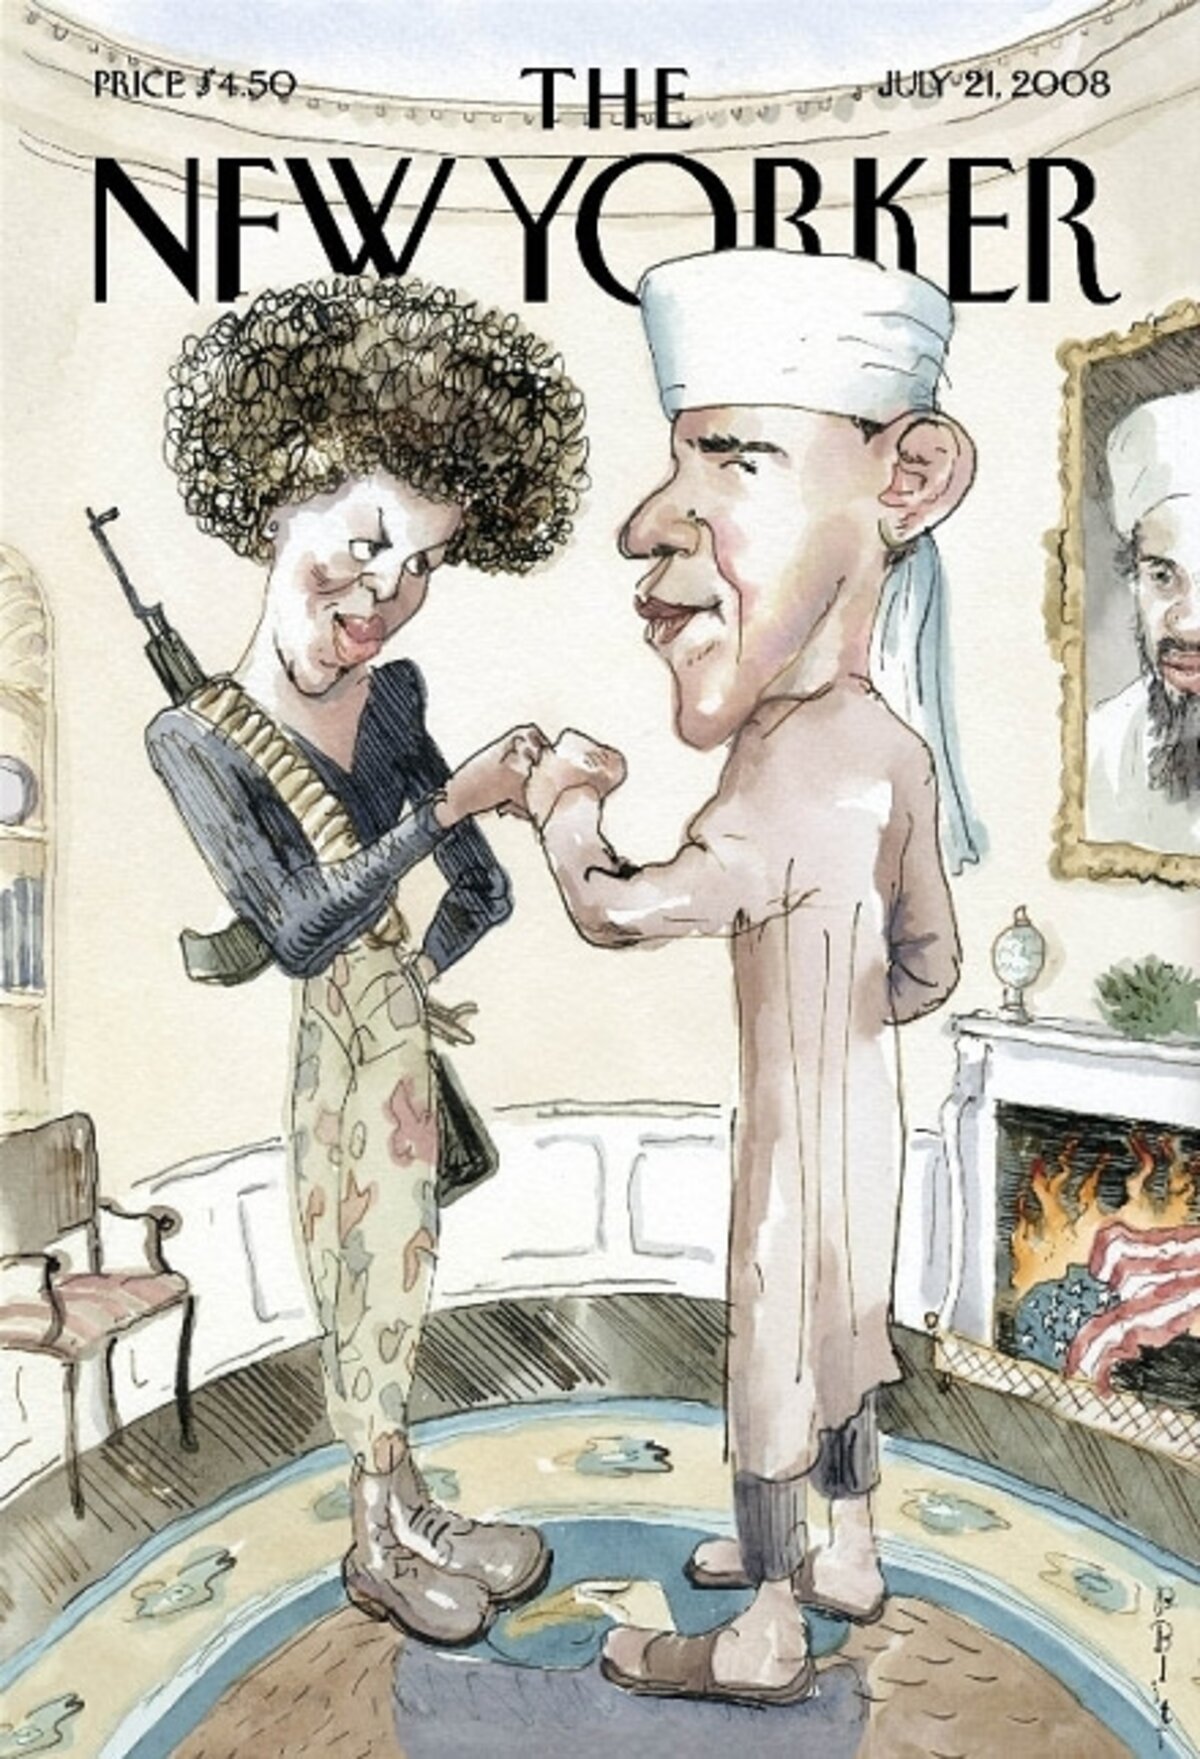 A New Yorker nagy port kavart borítója 2006-ból, amellyel a szerző támogatni szándékozta Obamát, de többek között a későbbi amerikai elnök sem vette jó néven